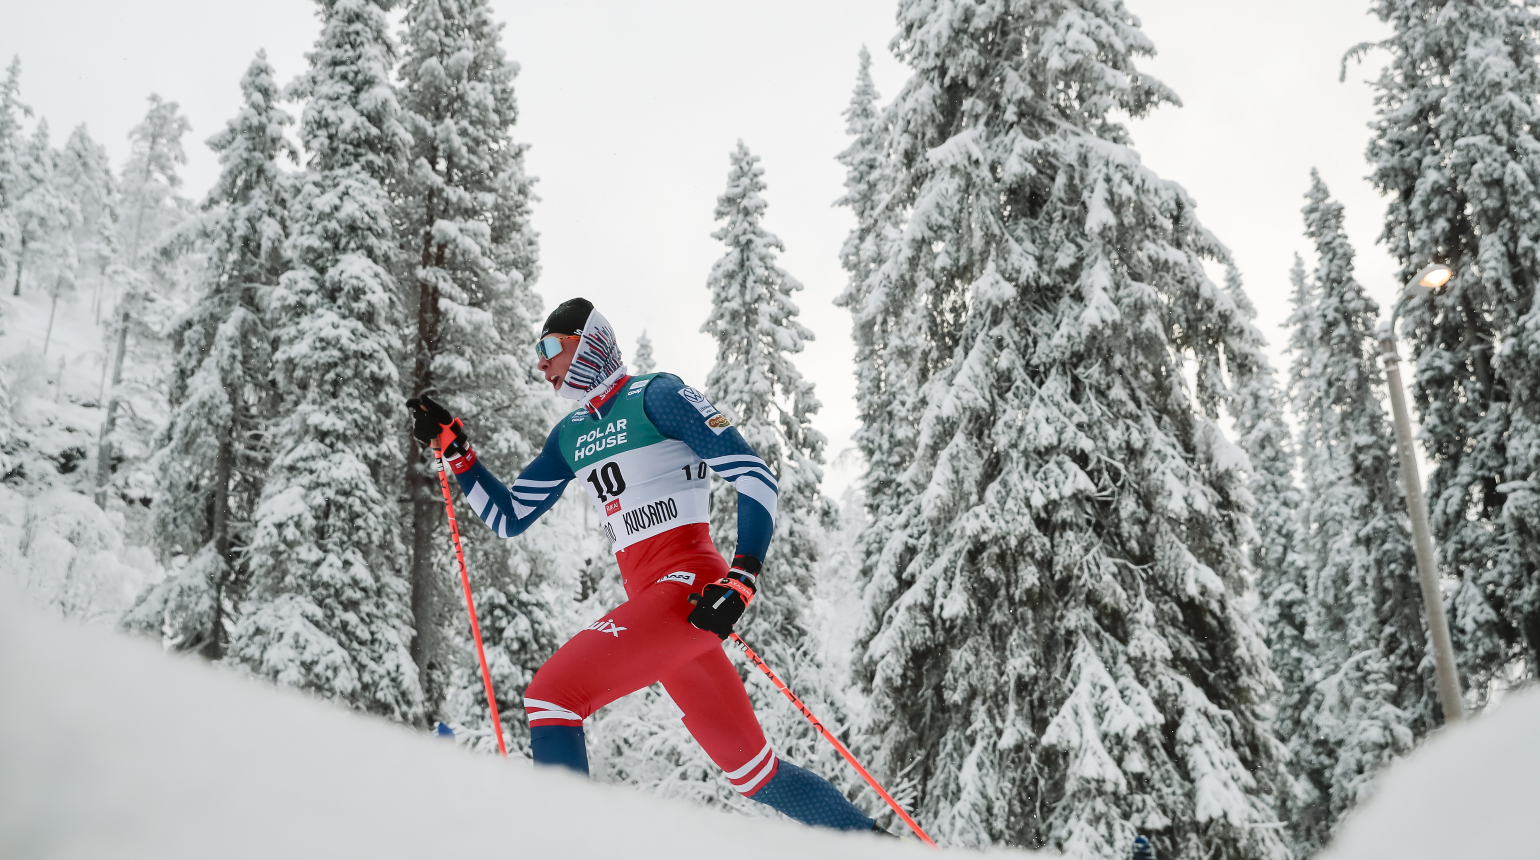 Běžce na lyžích čeká další mrazivá švédská štace, reprezentace se přesunula do Östersundu